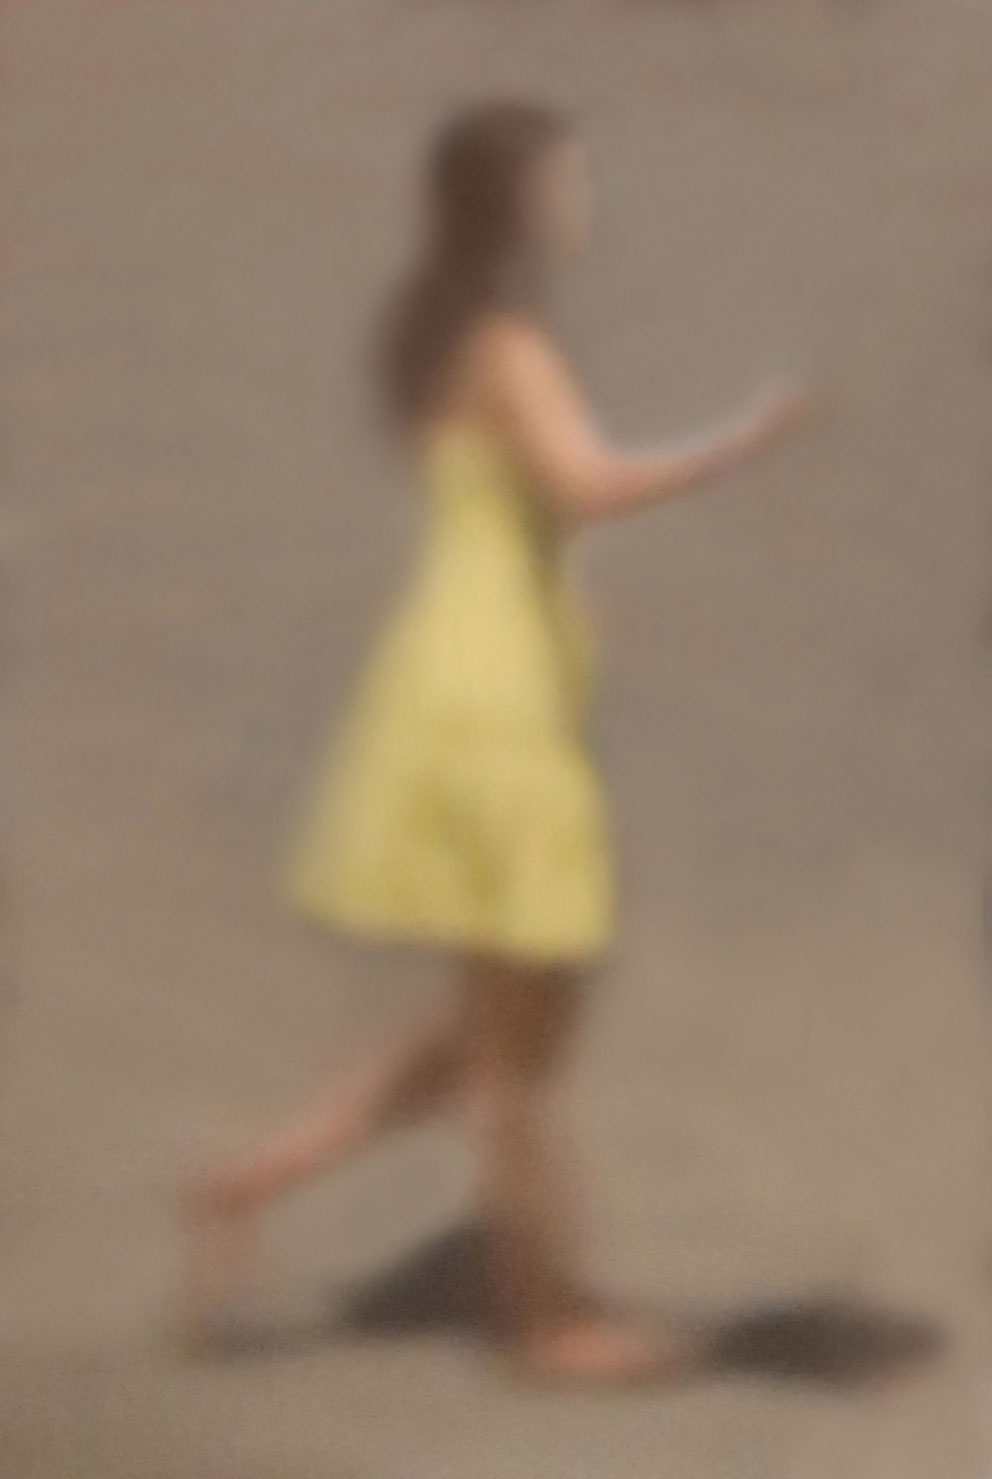 07 „Junge Frau im gelben Kleid“, 2020, Auckland NZ, Camera Obscura, Pigmentdruck auf Alu-Dibond